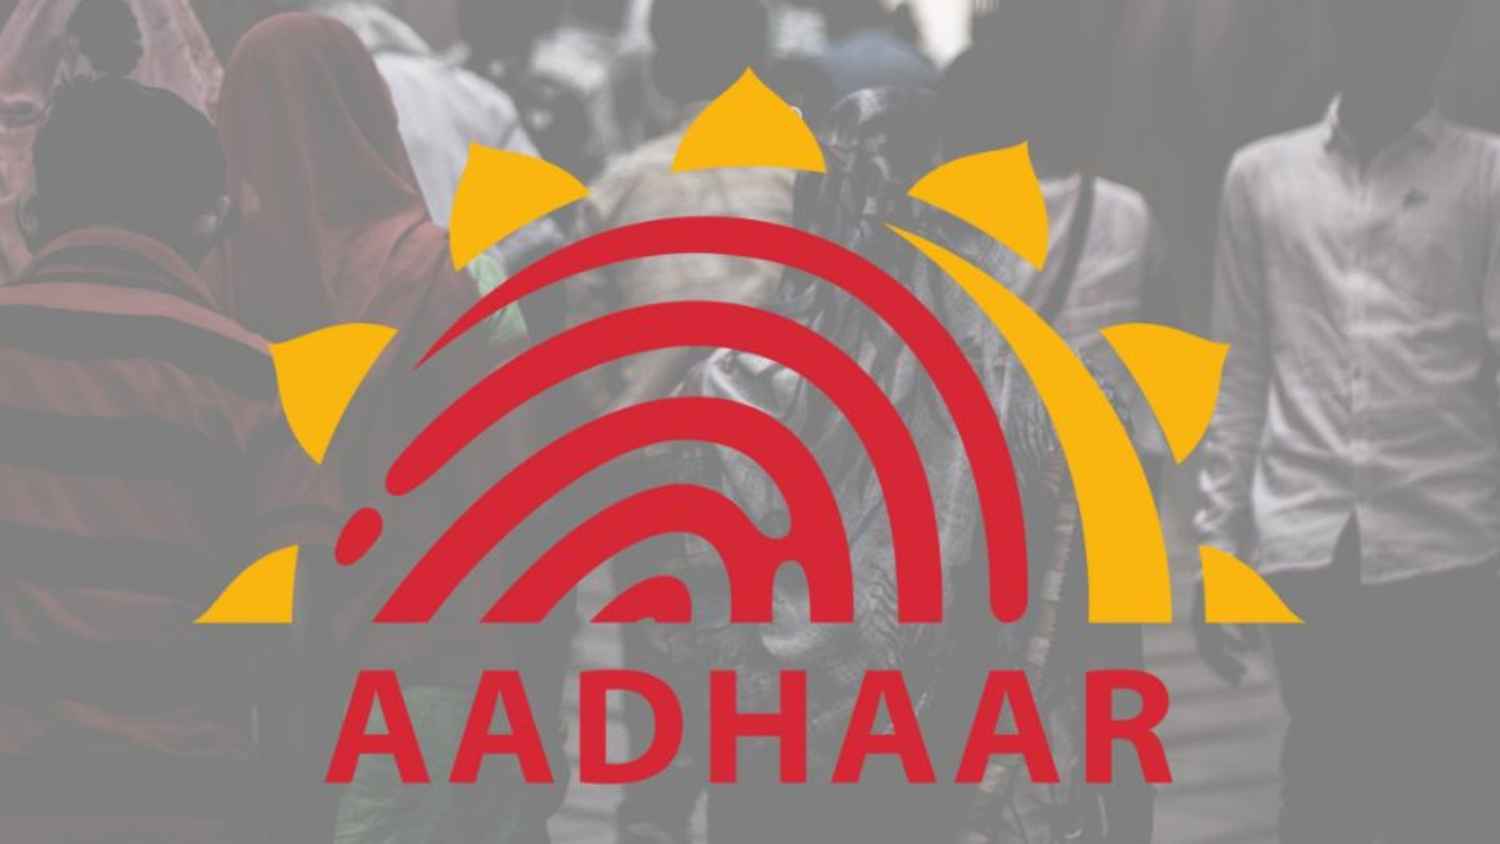 Why it is important to junk Aadhaar